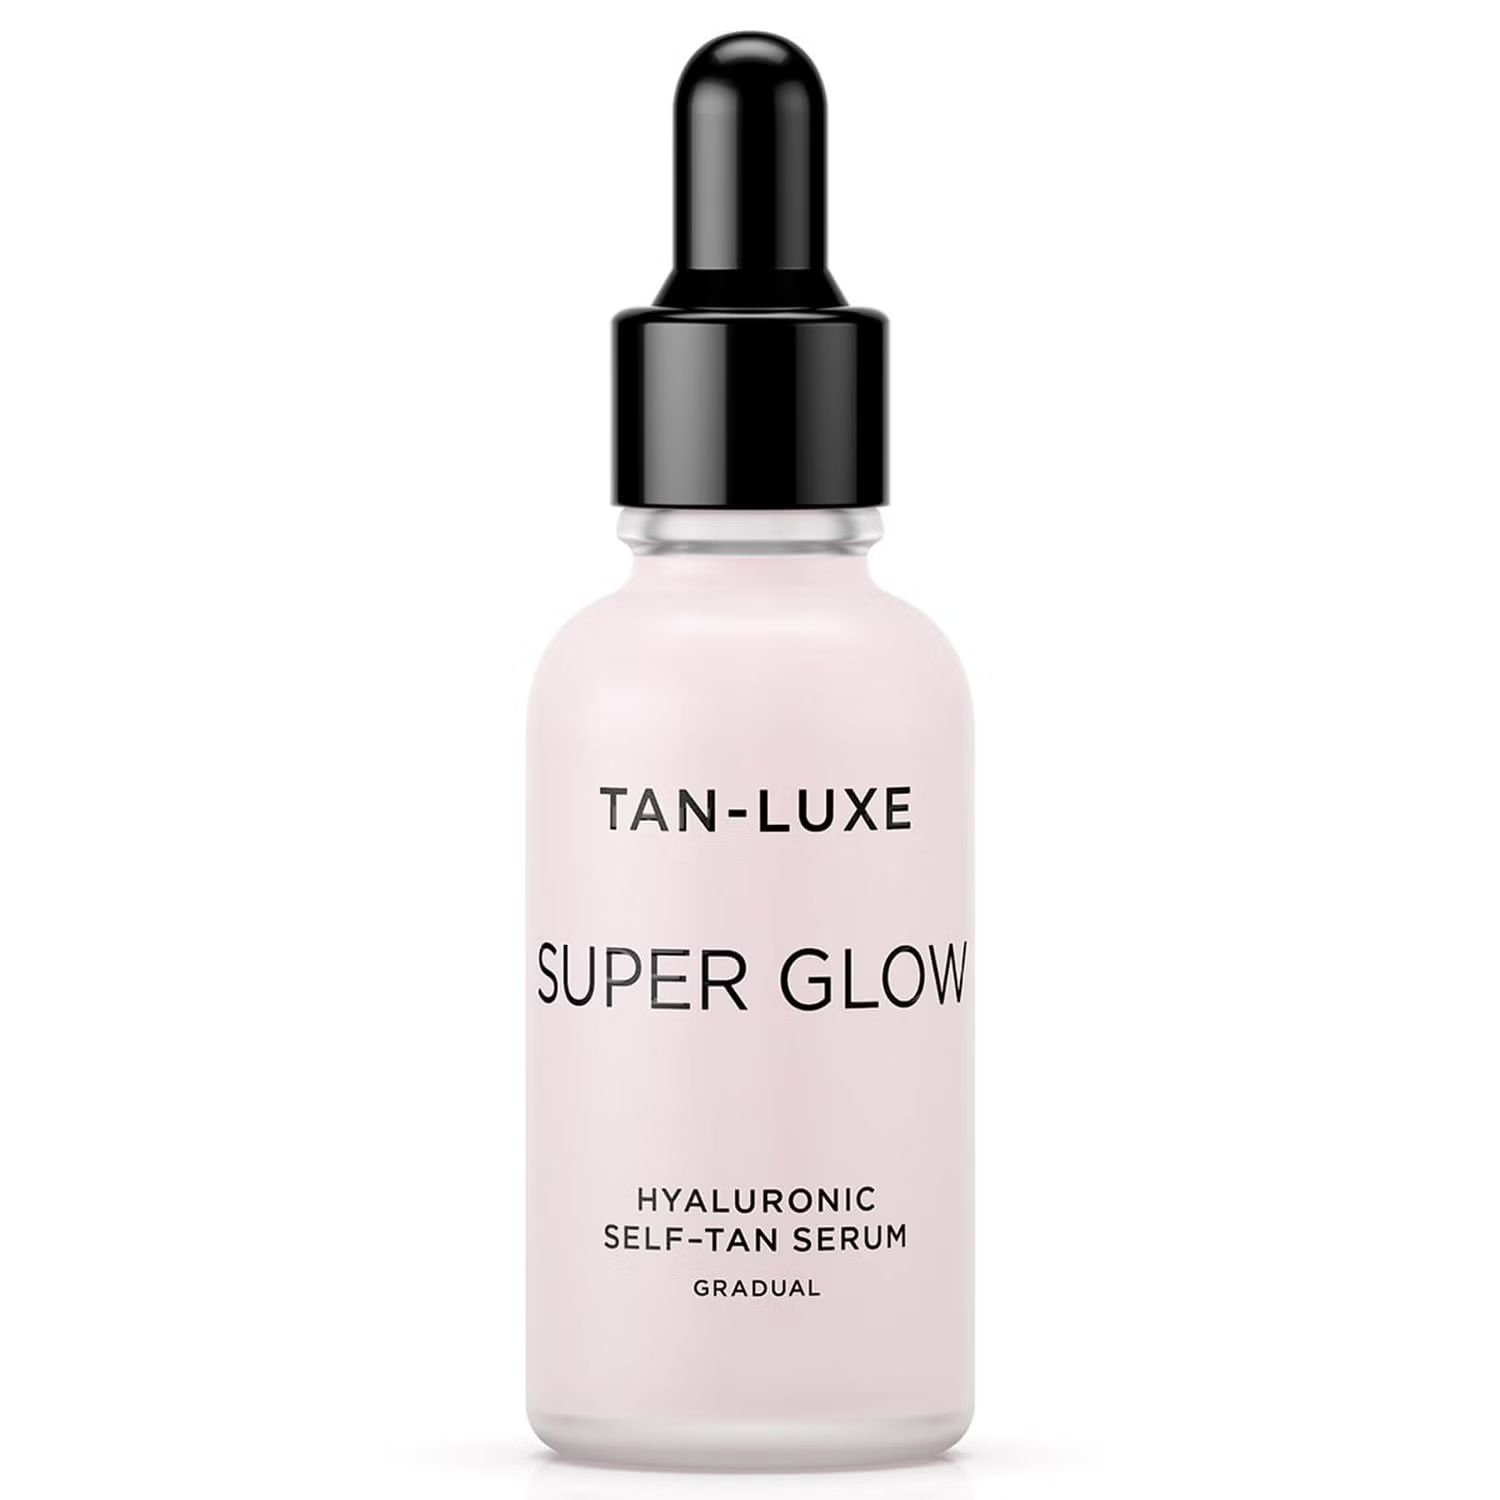 Tan-Luxe Super Glow Hyaluronic Self-Tan Serum 30ml | Look Fantastic (UK)